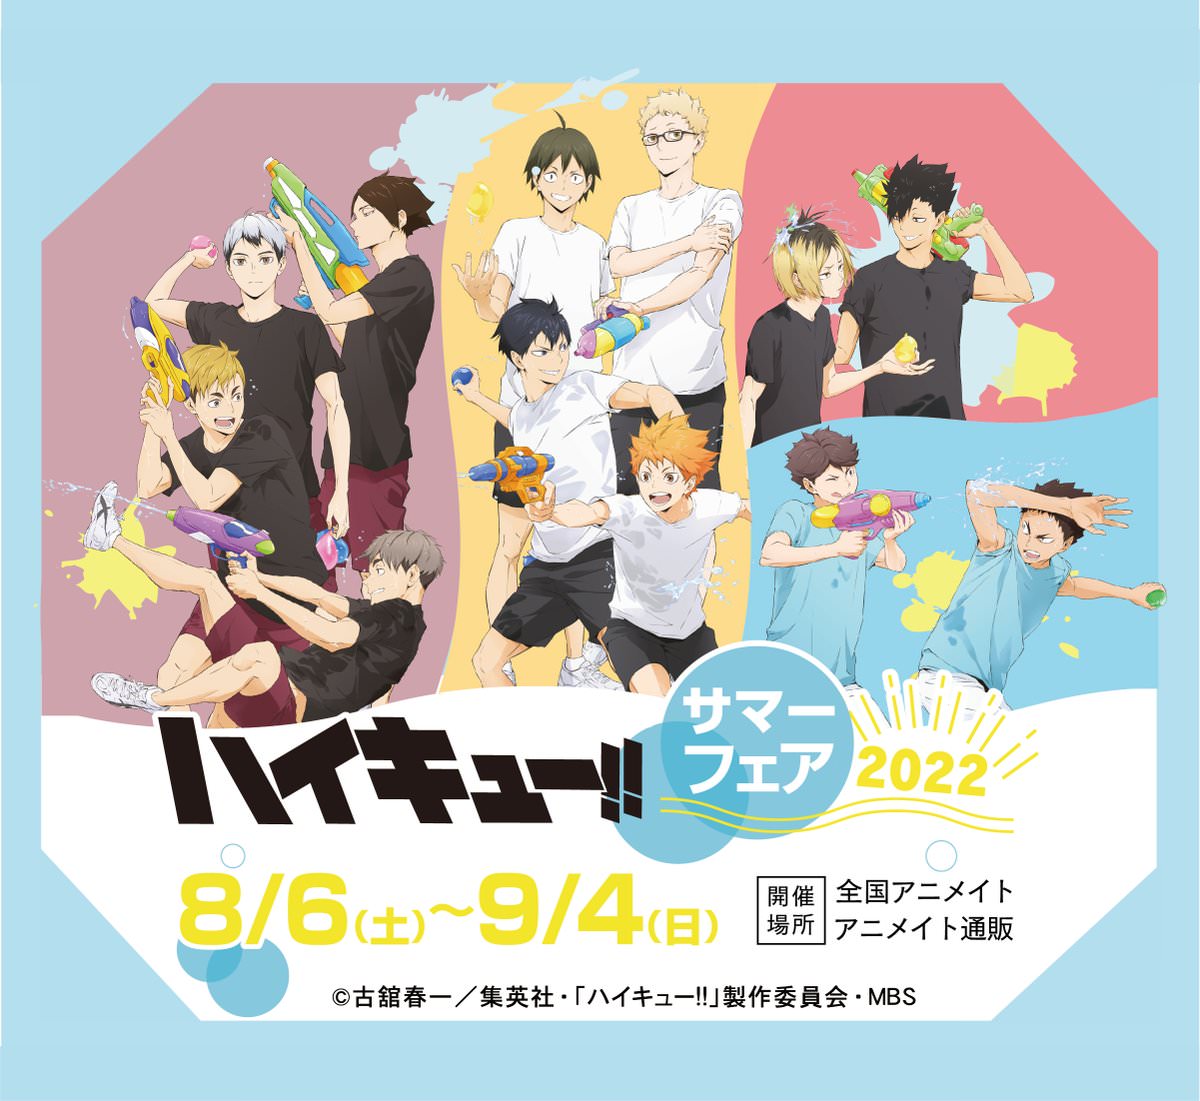 ハイキュー!! 描き下ろしサマーフェア 2022 in アニメイト 8月6日より開催!